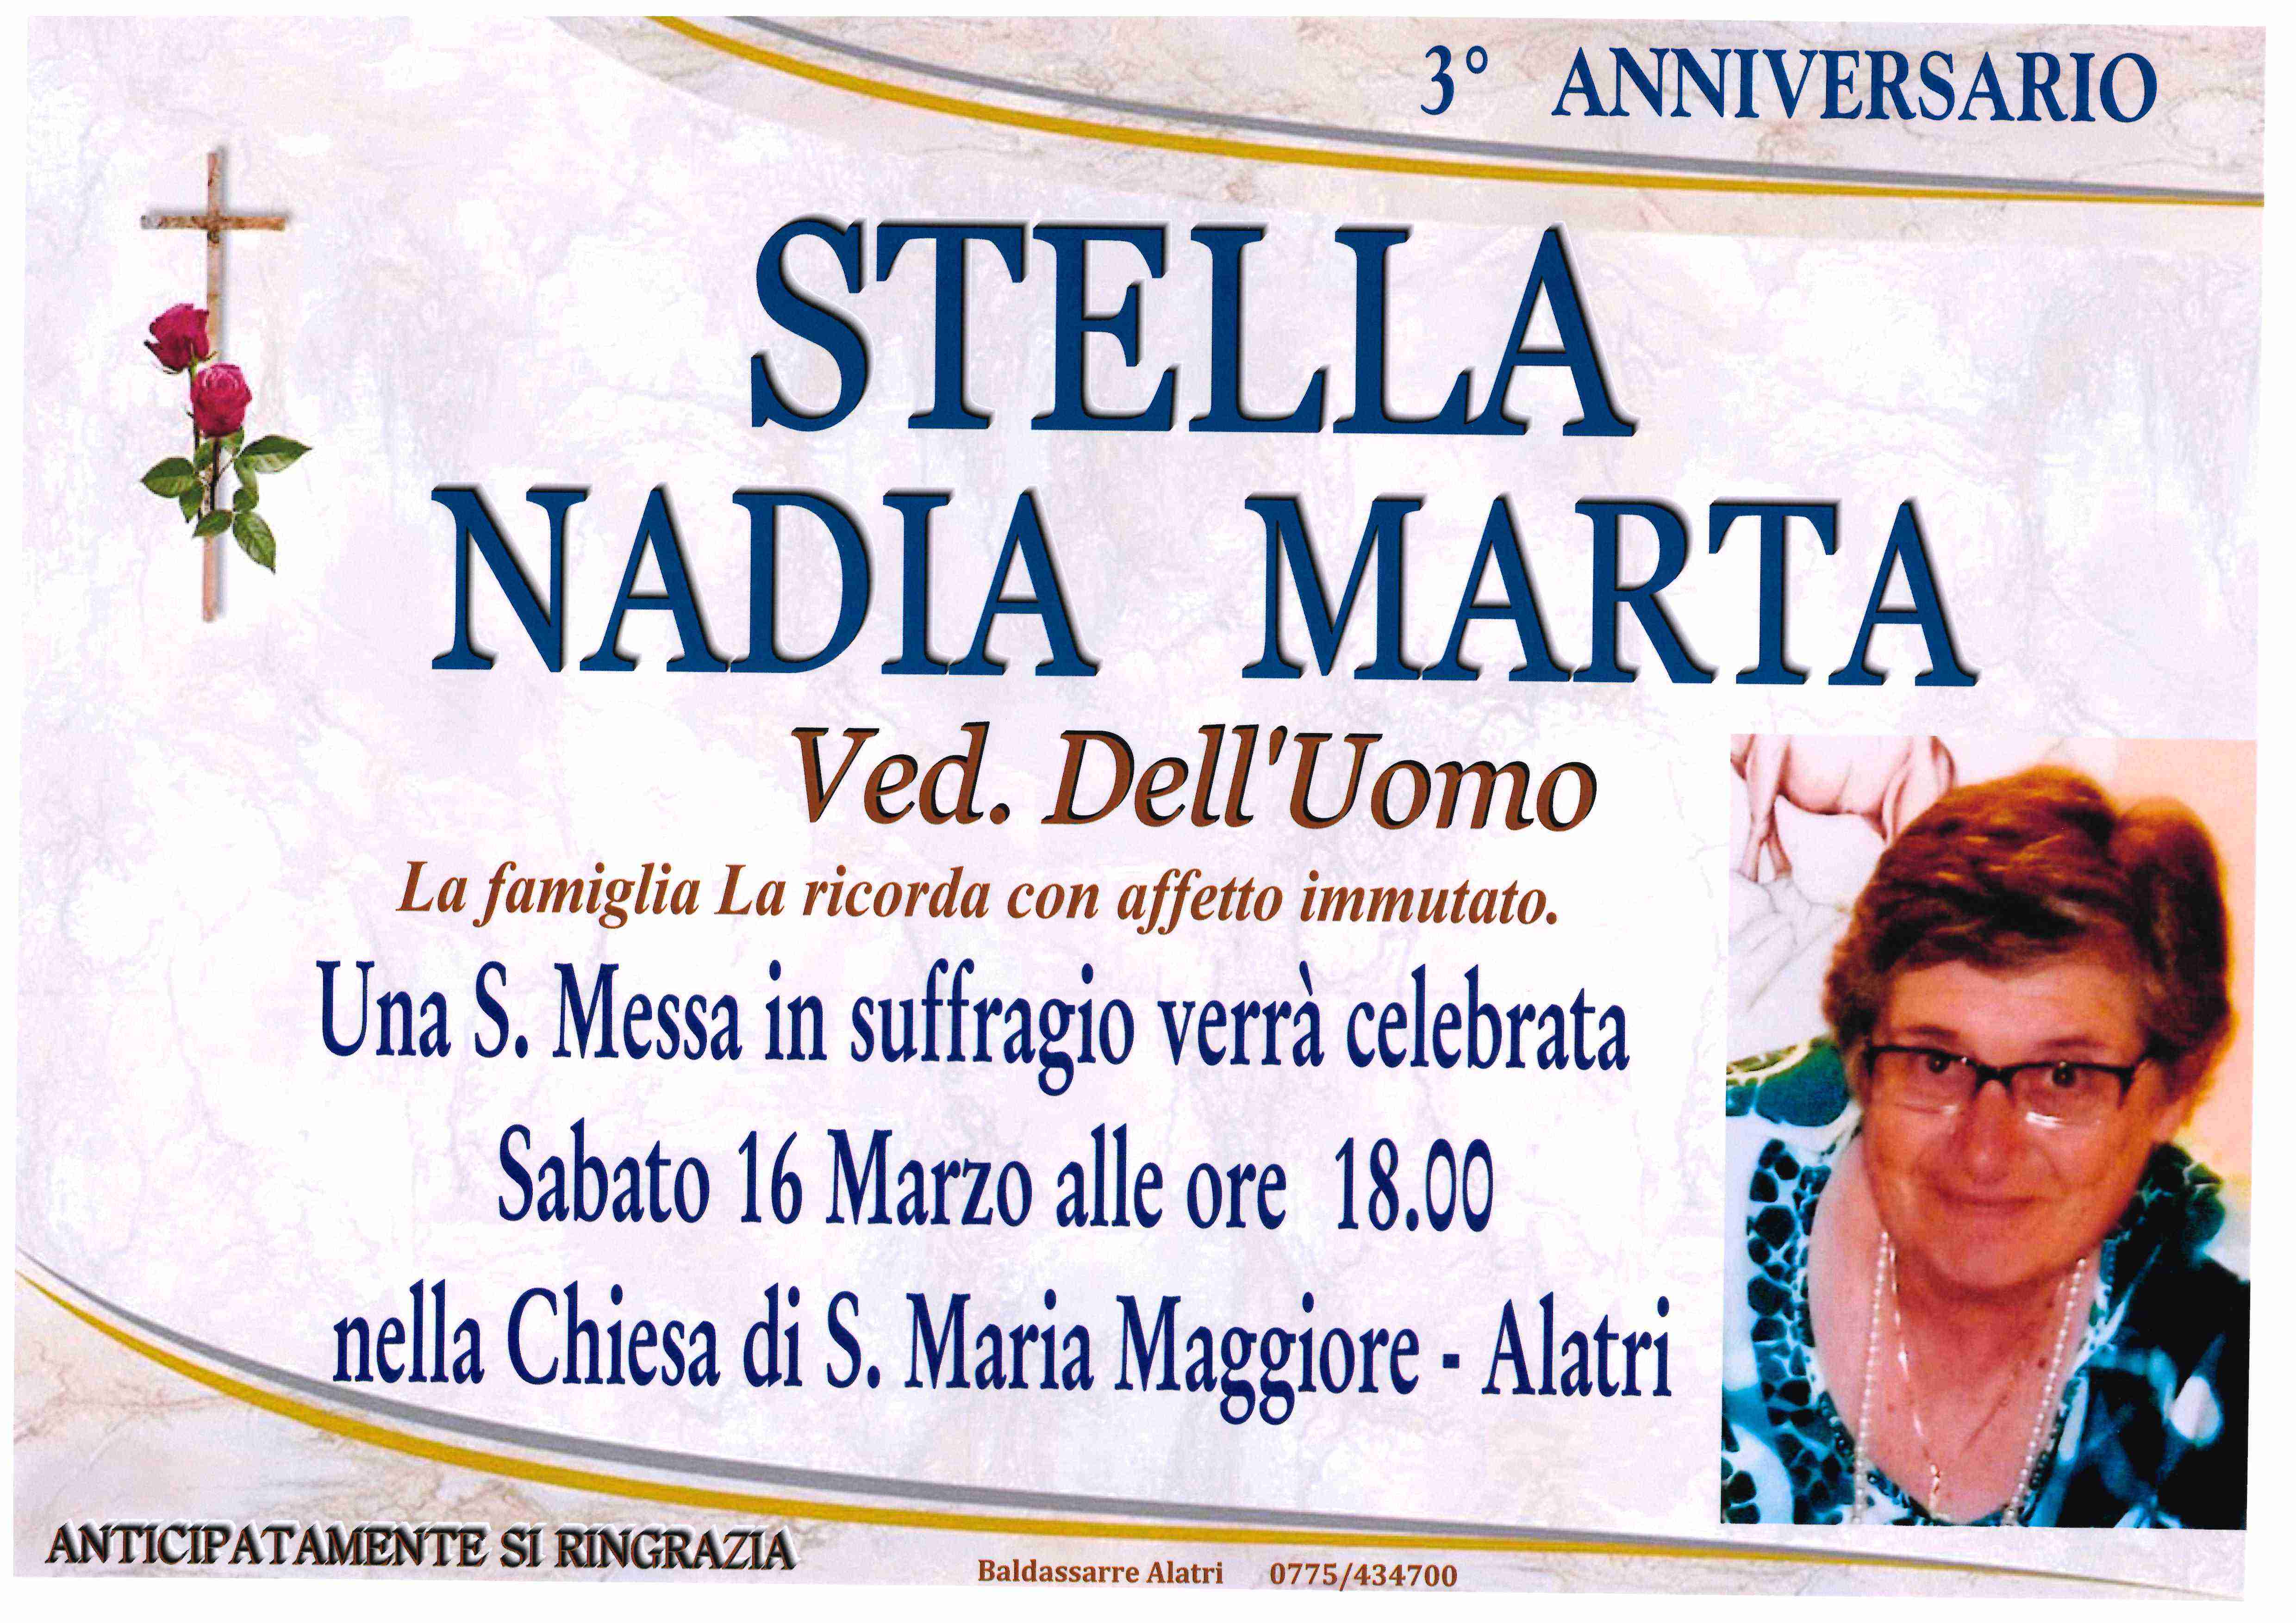 Nadia Marta Stella